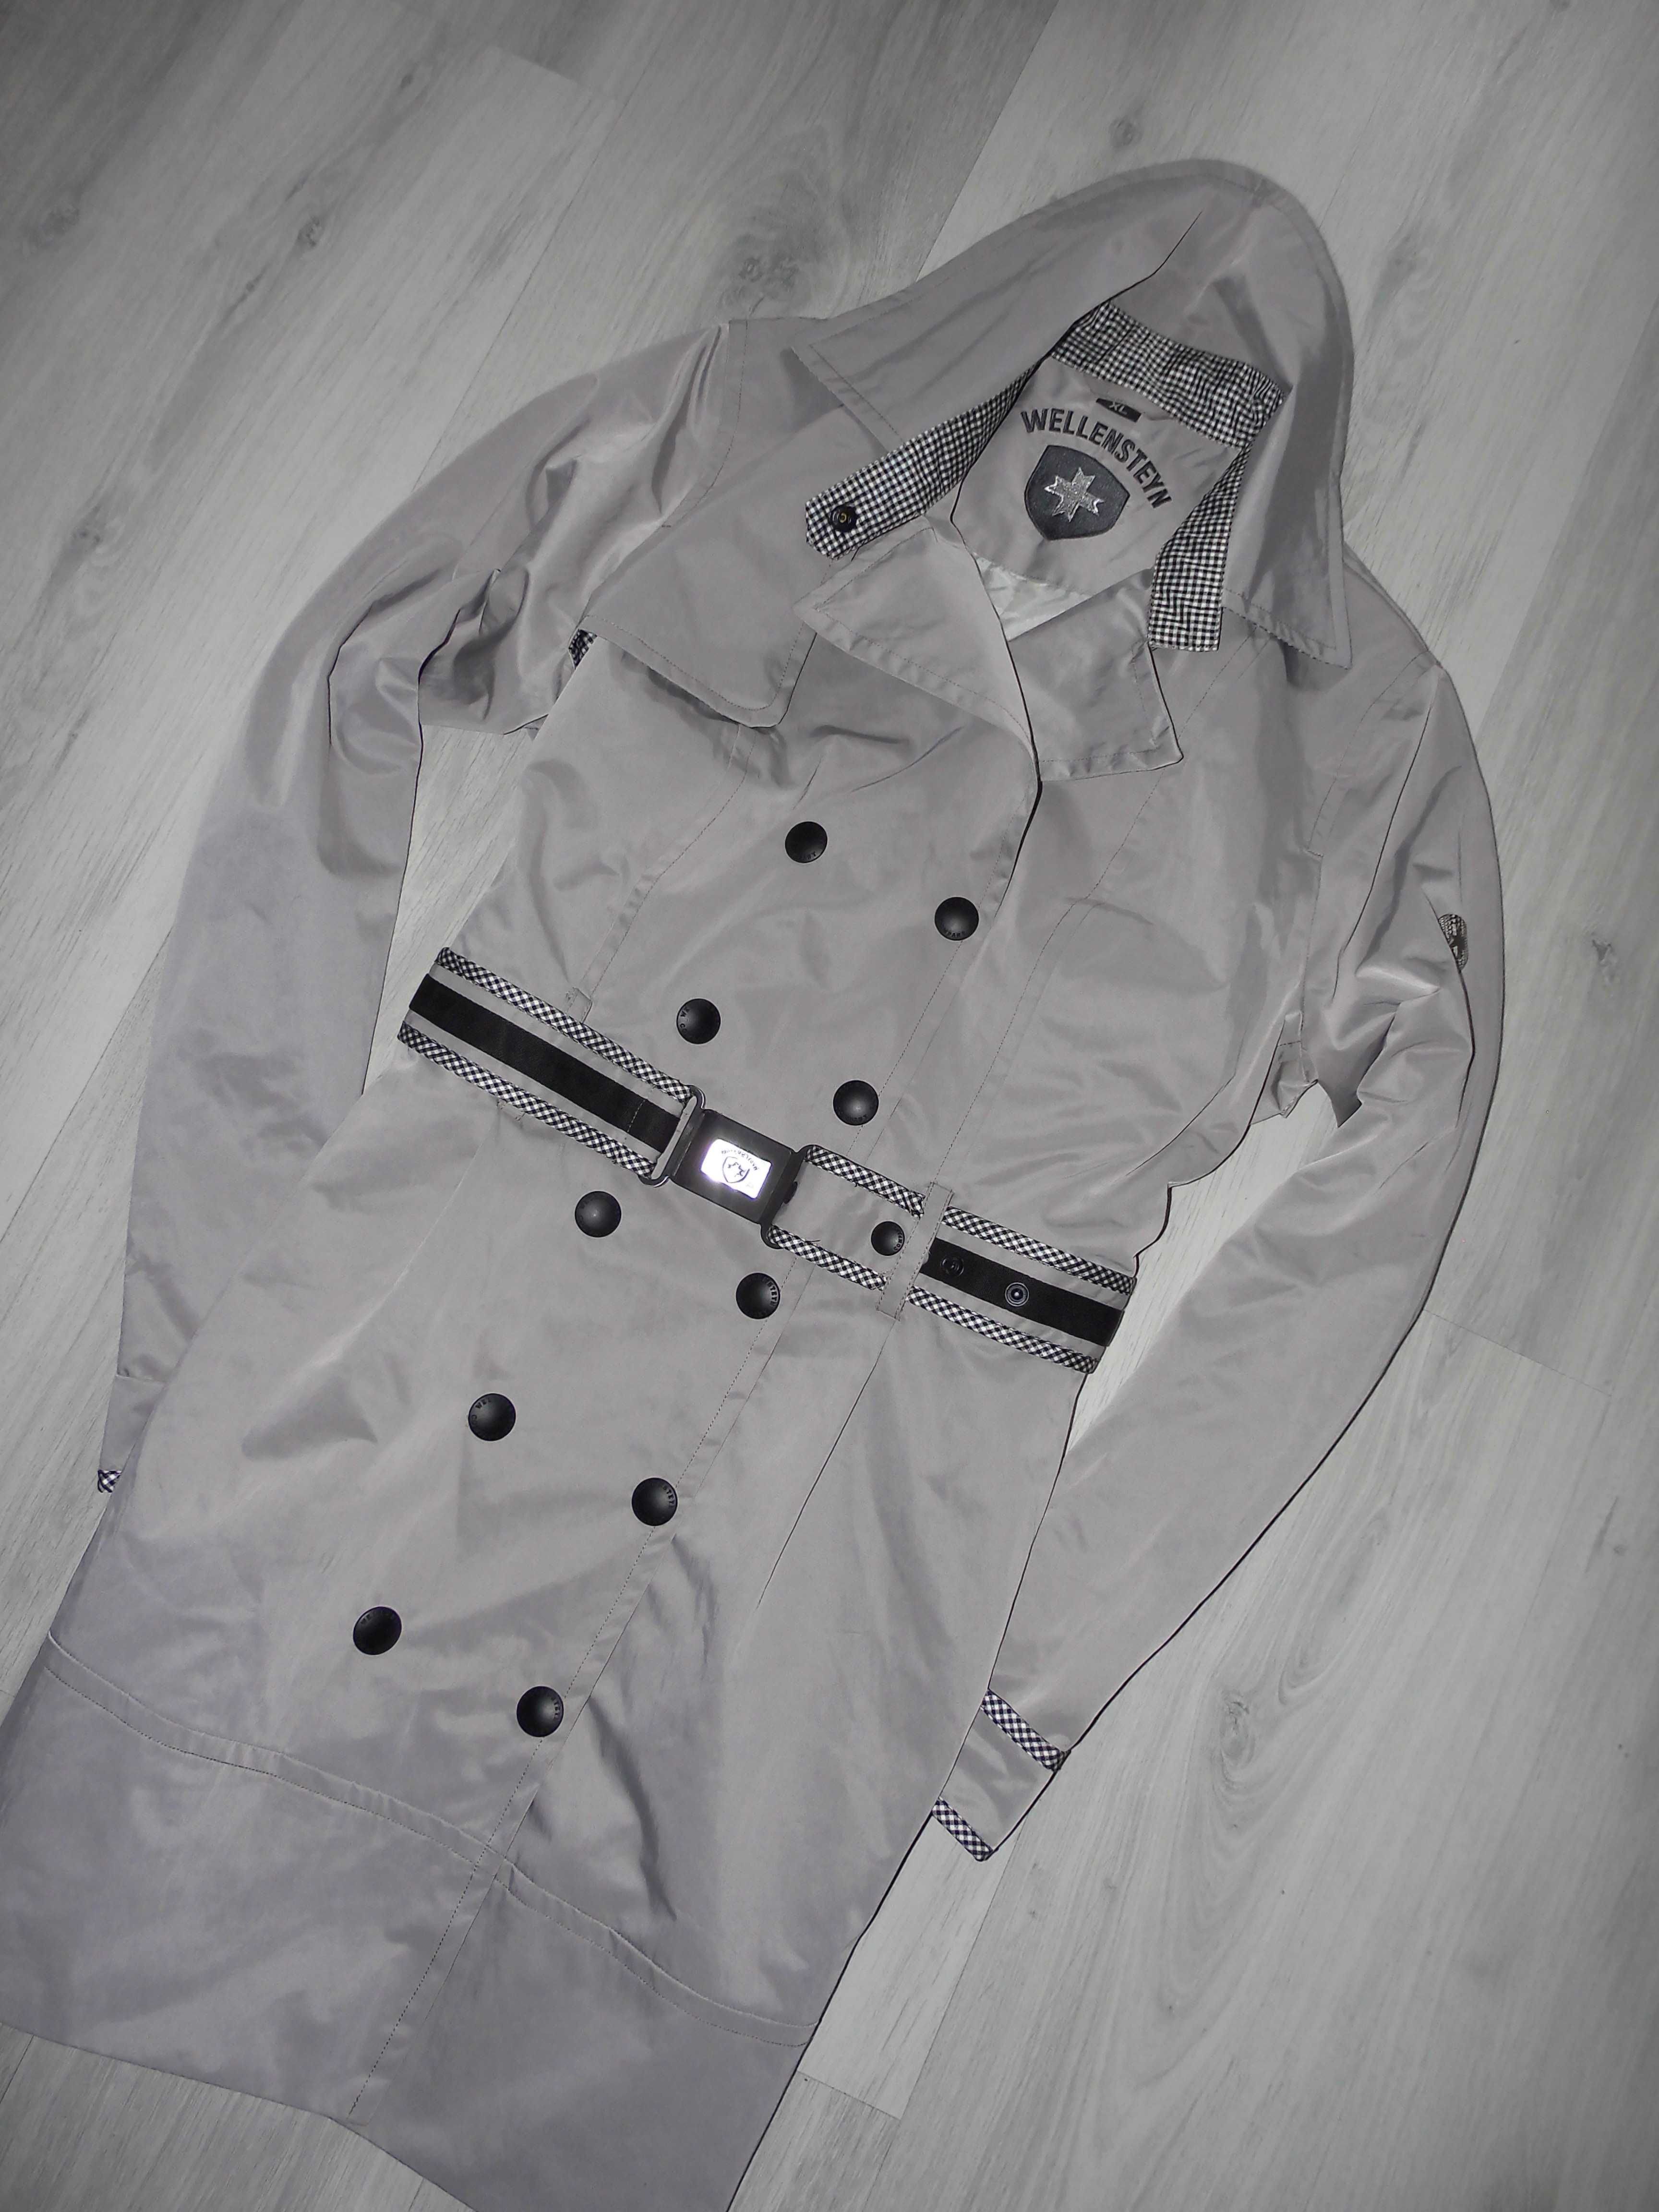 Wellensteyn Nightingale Coat Przejściowy płaszcz damski XL J nowy